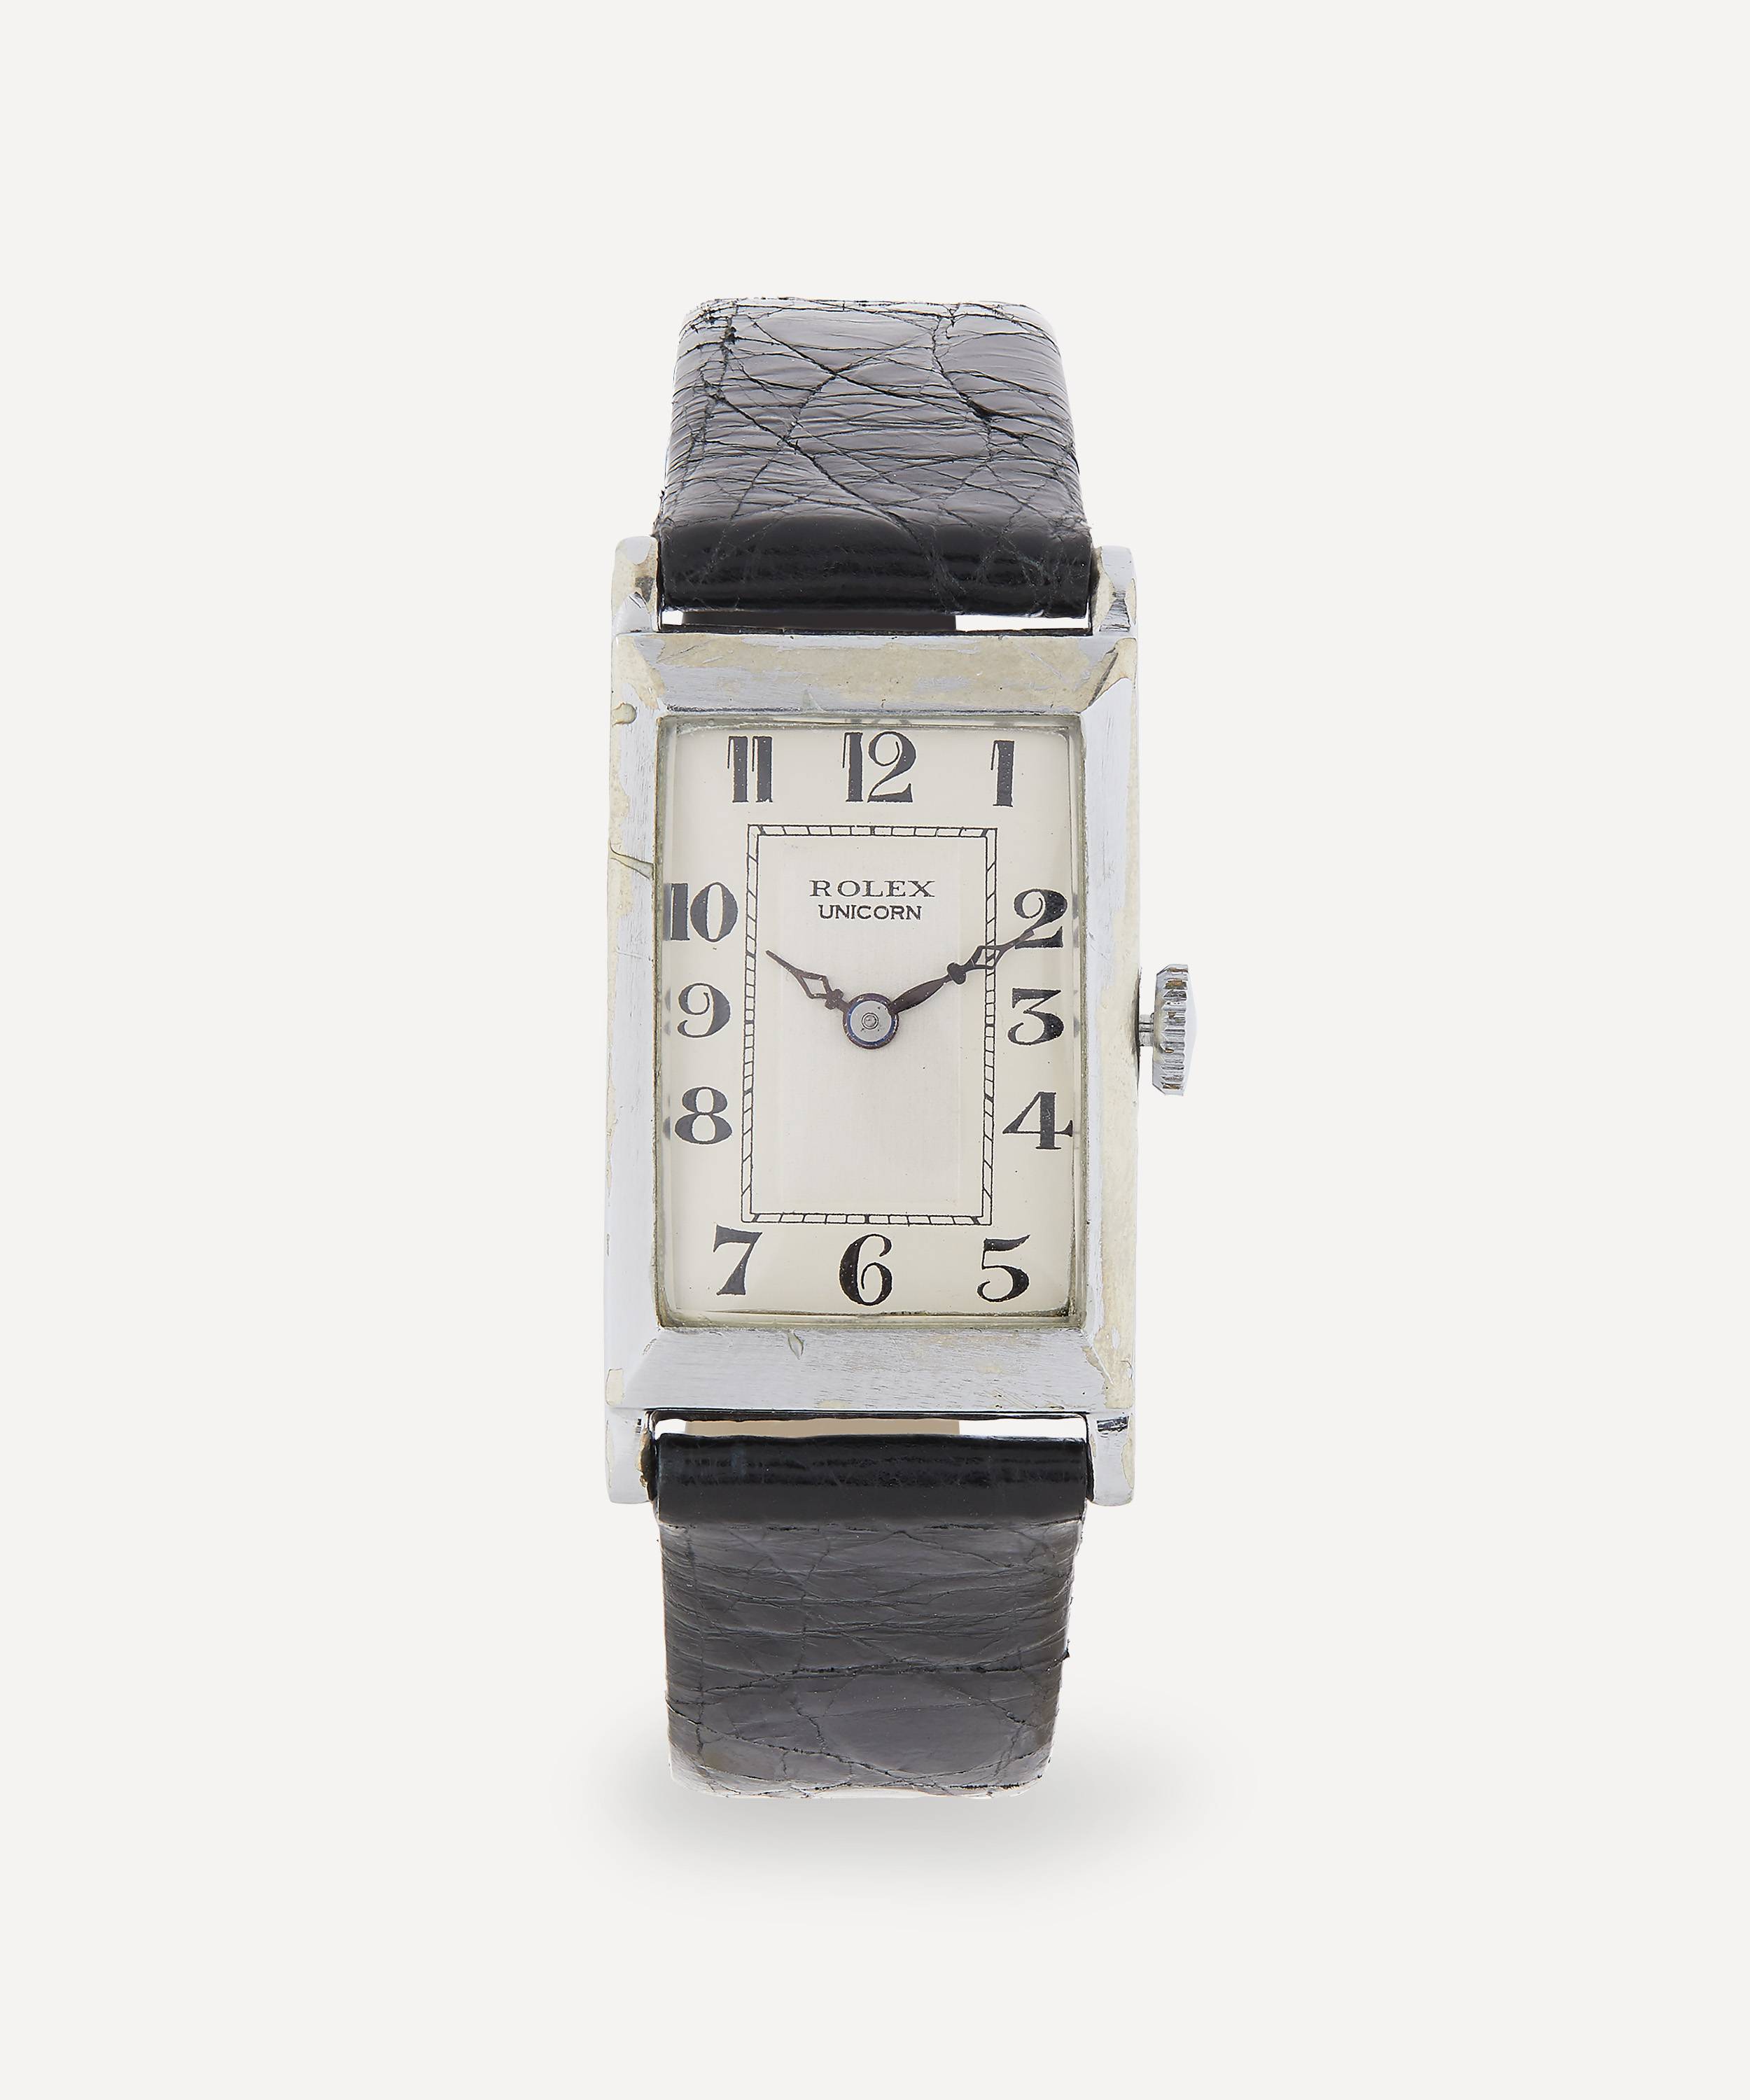 Vintage Rolex Unicorn White Metal Watch |